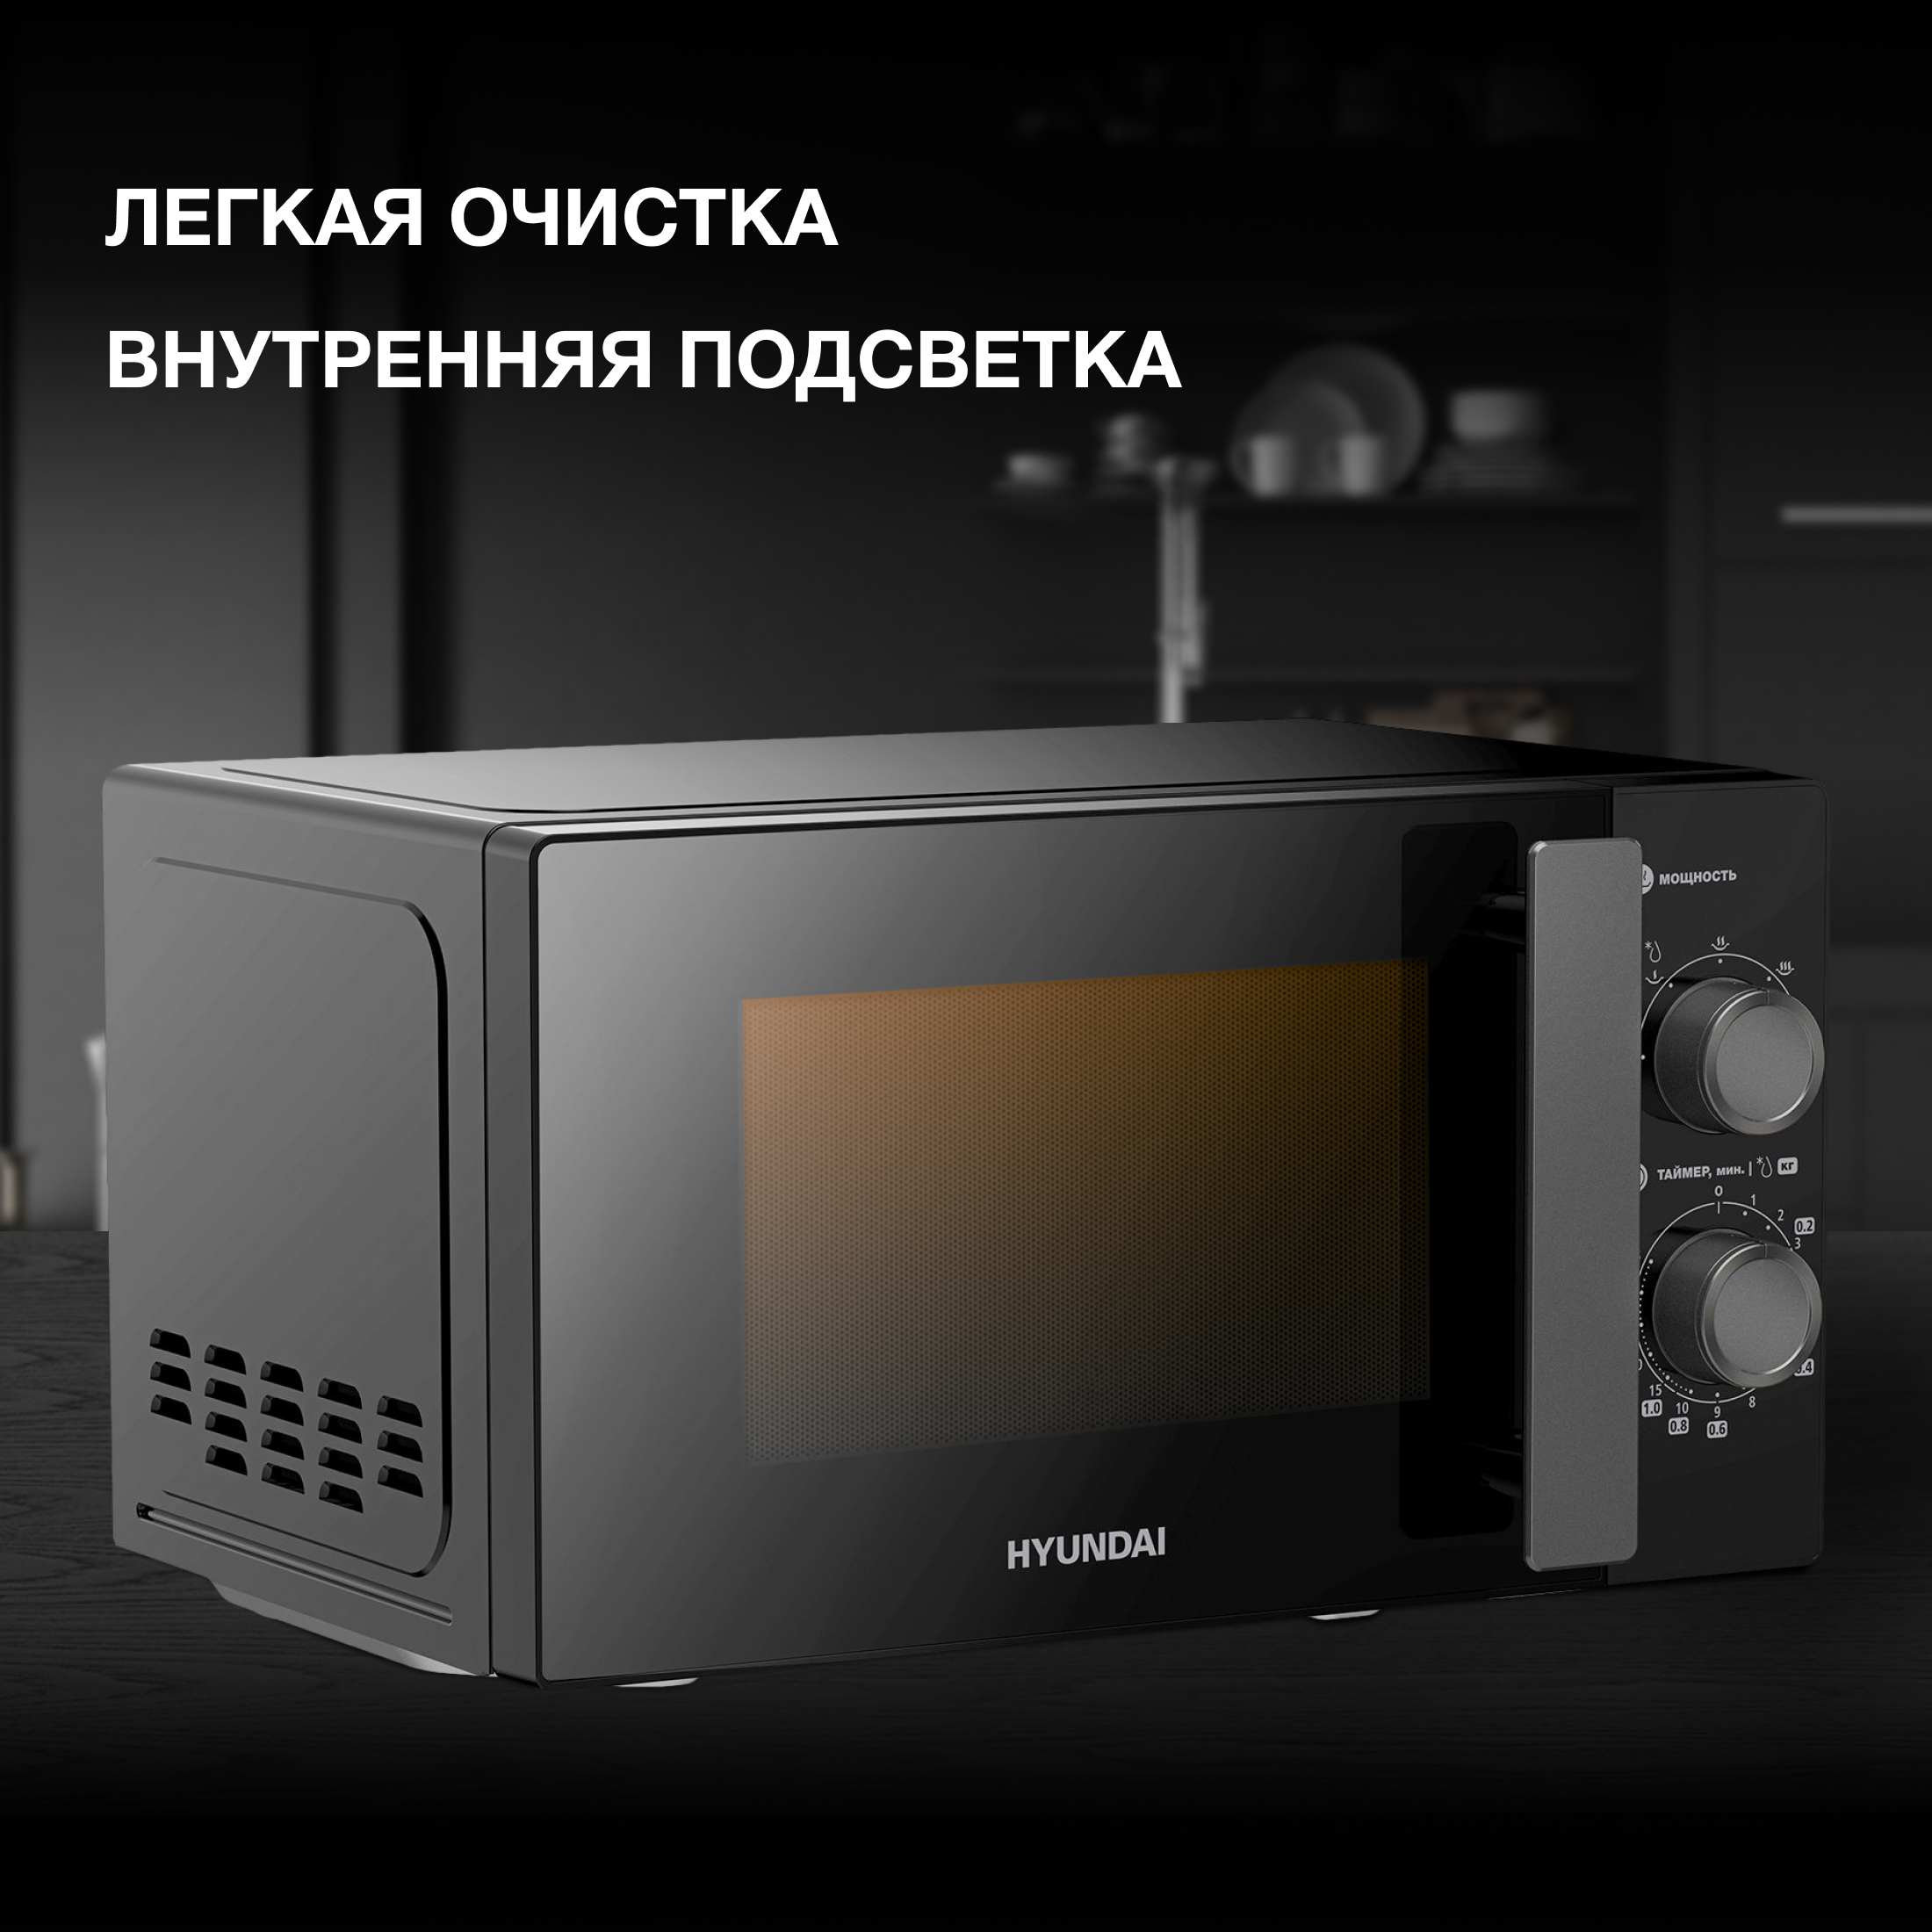 Микроволновая печь соло HYUNDAI HYM-M2091 черный микроволновая печь свч hyundai hym m2061 20л 700вт